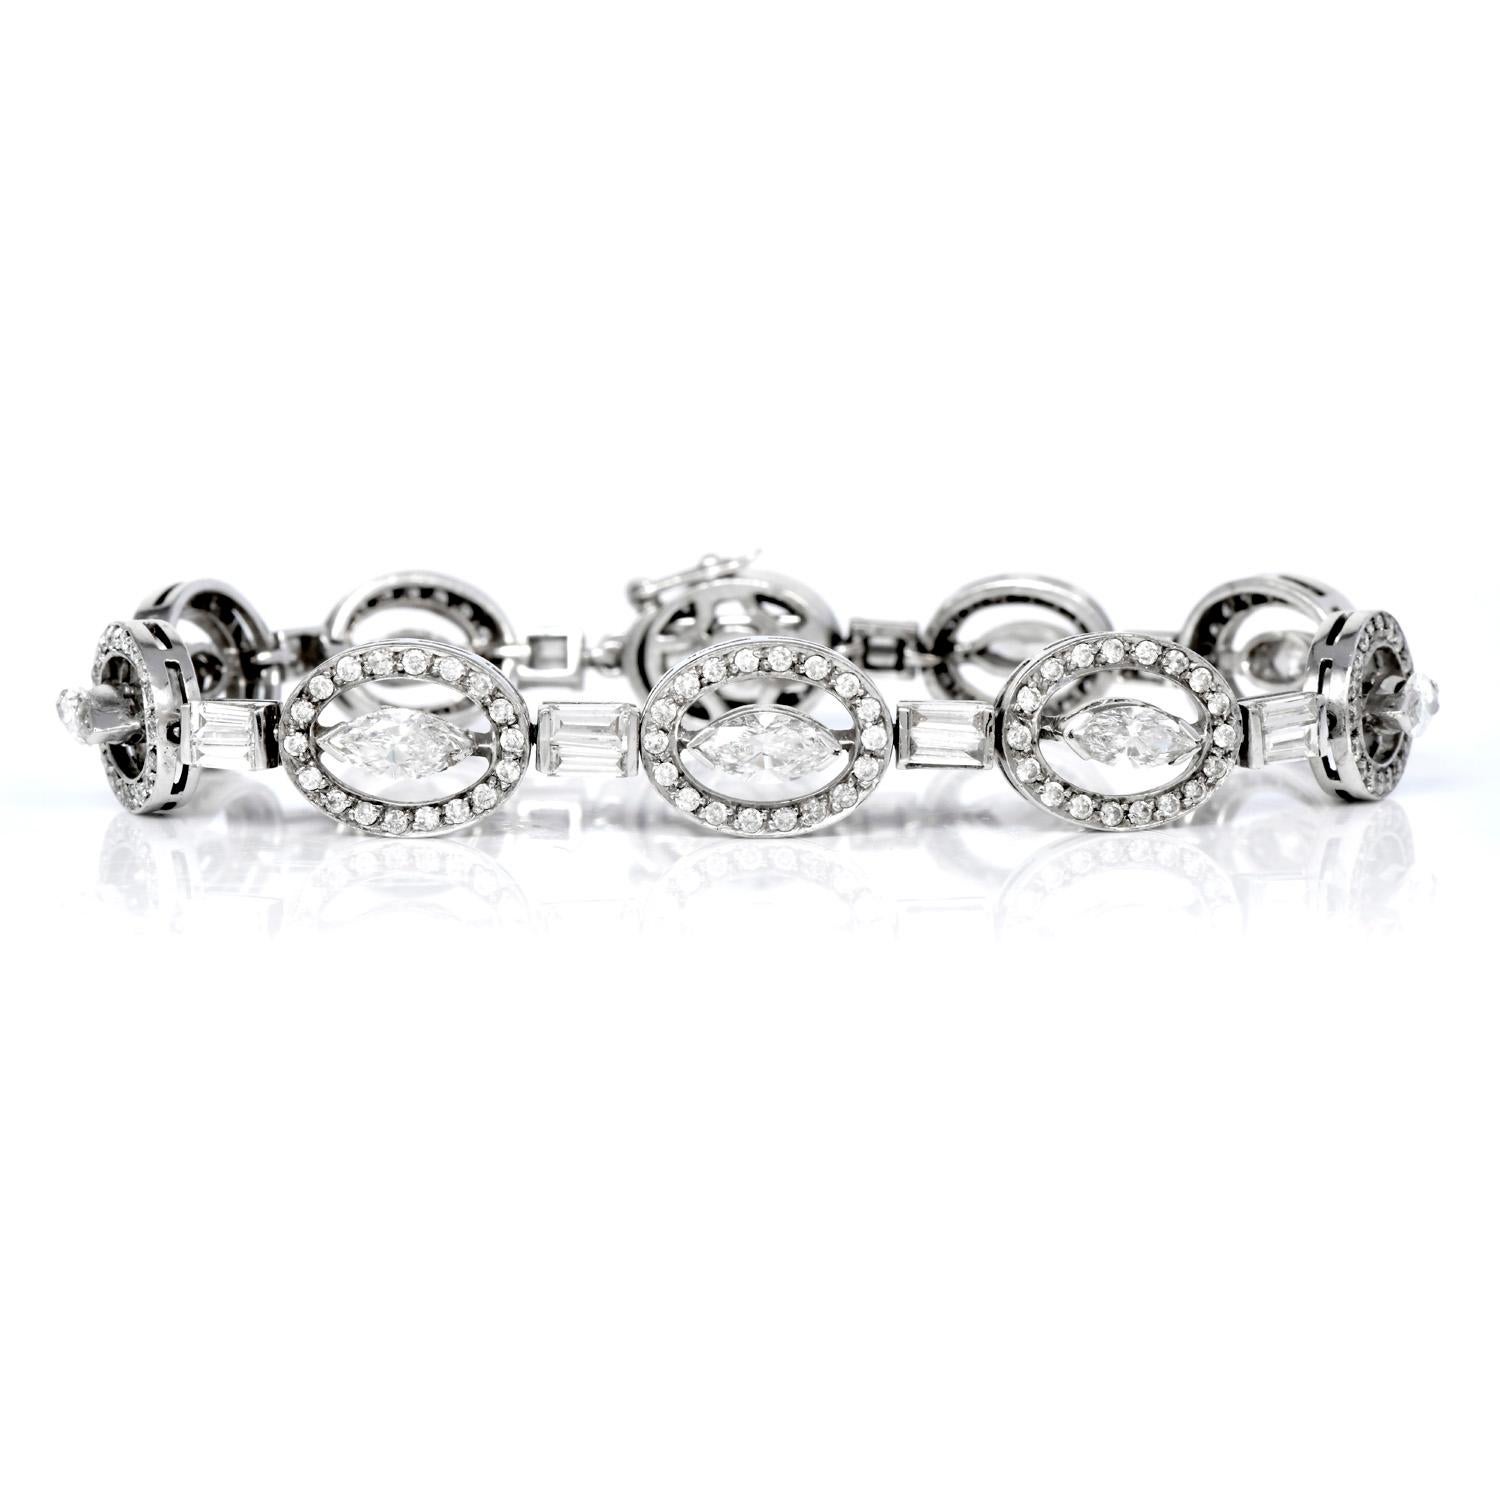 Spüren Sie die Eleganz jeden Tag mit diesem atemberaubenden ovalen Diamant-Gliederarmband!
Dieses Armband aus den 1990er Jahren wird in jedem Glied von 10 echten Diamanten im Marquise-Schliff und 180 runden Diamanten im Baguette-Schliff von